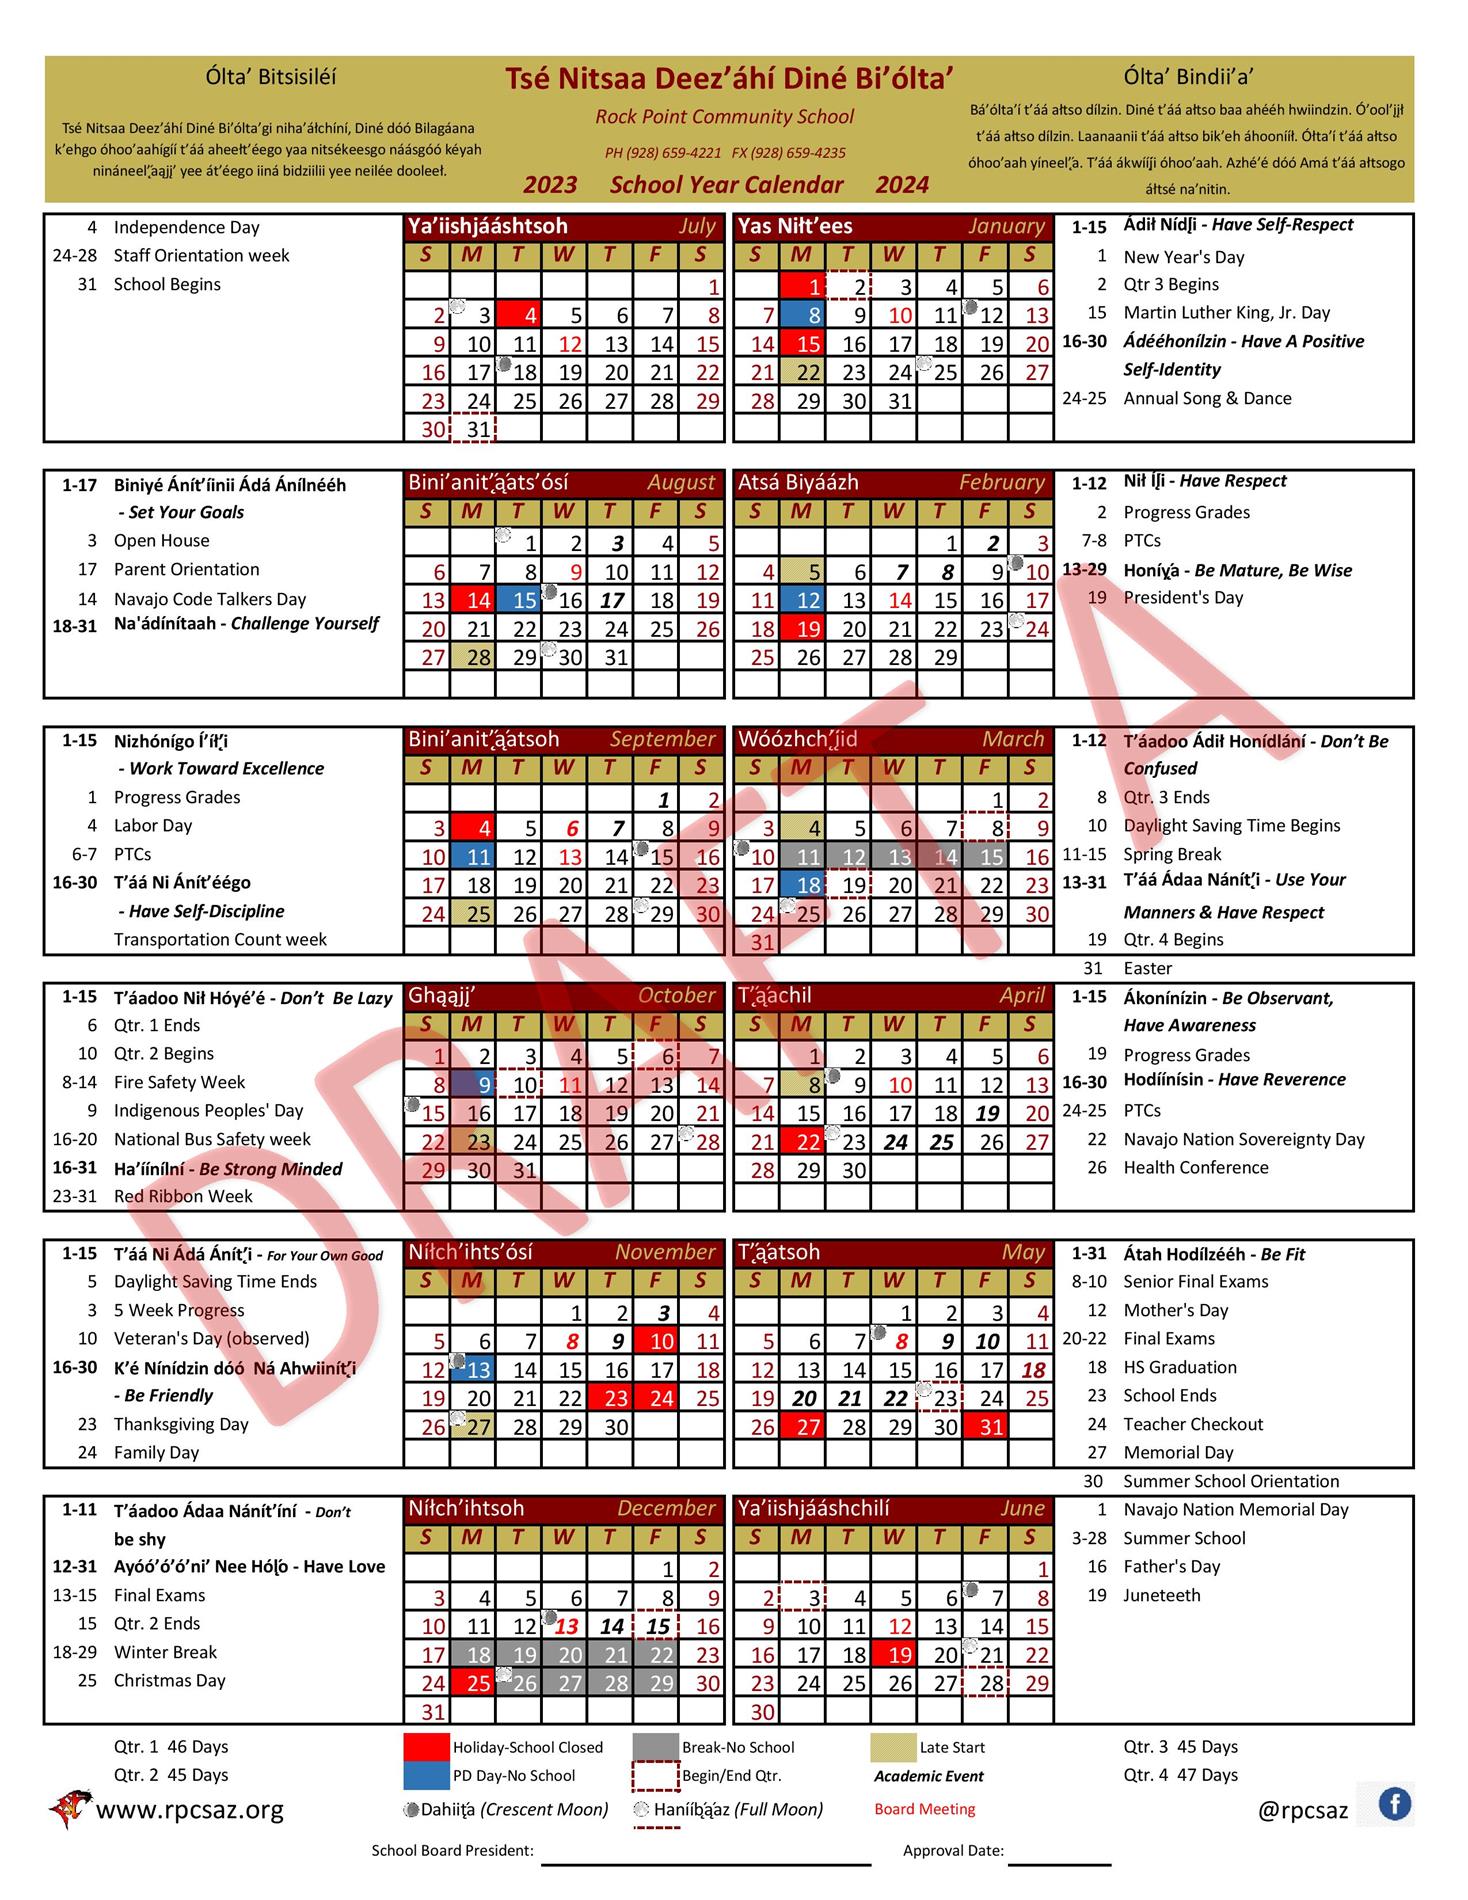 Draft A School Calendar for SY 23-24